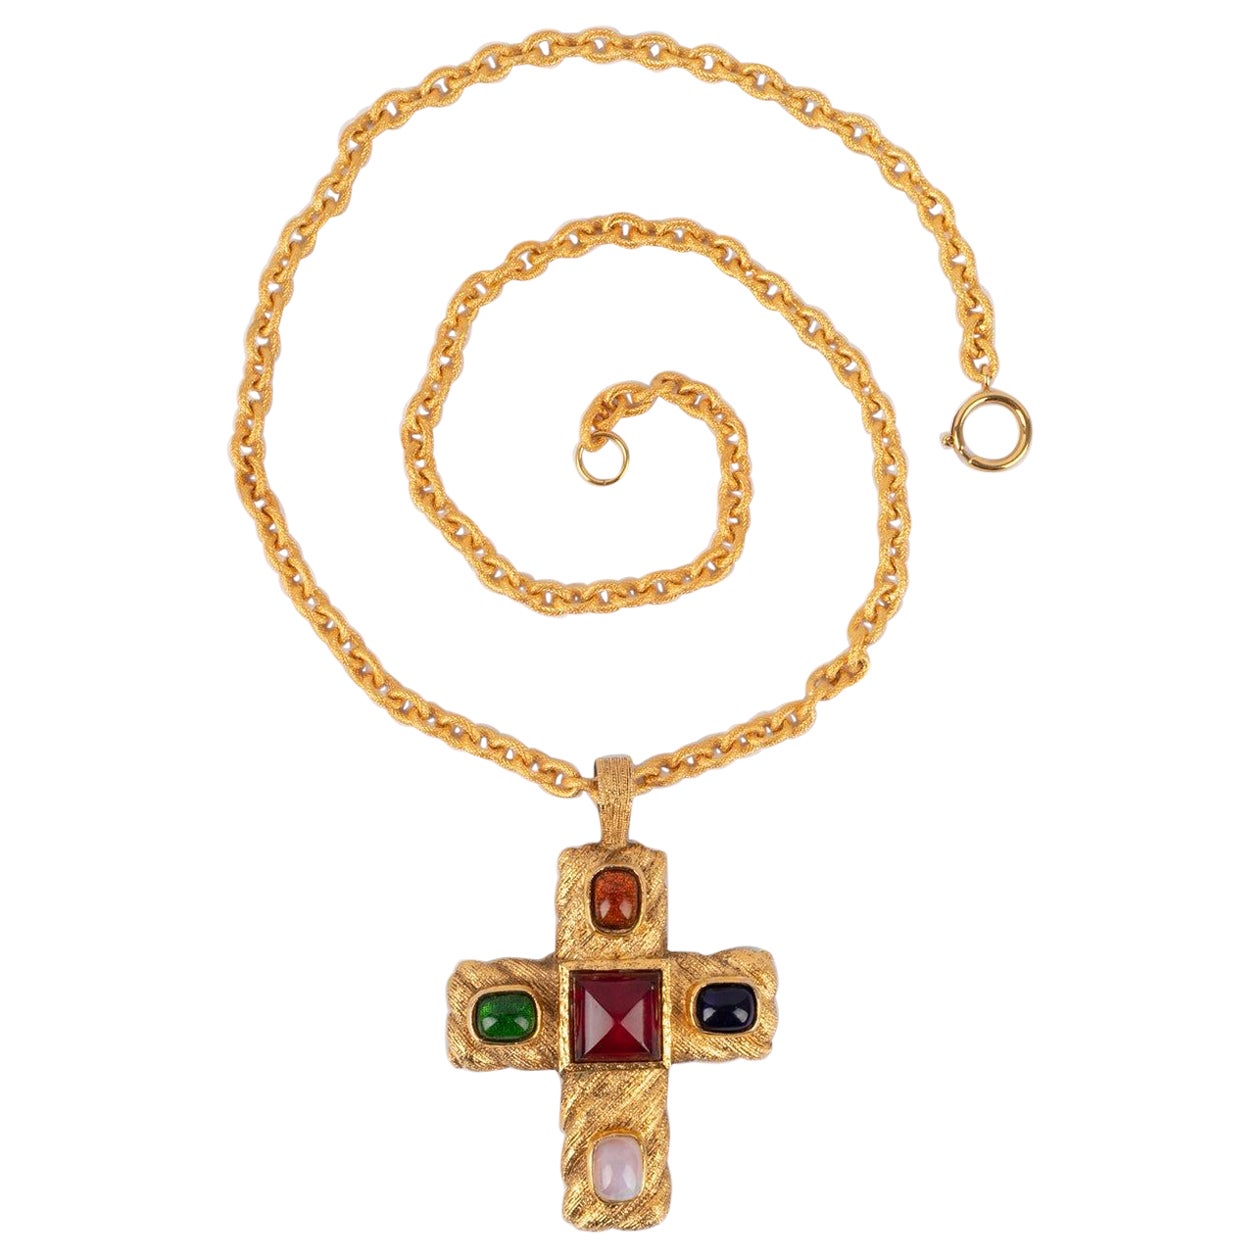 Chanel Golden Metal Cross Necklace